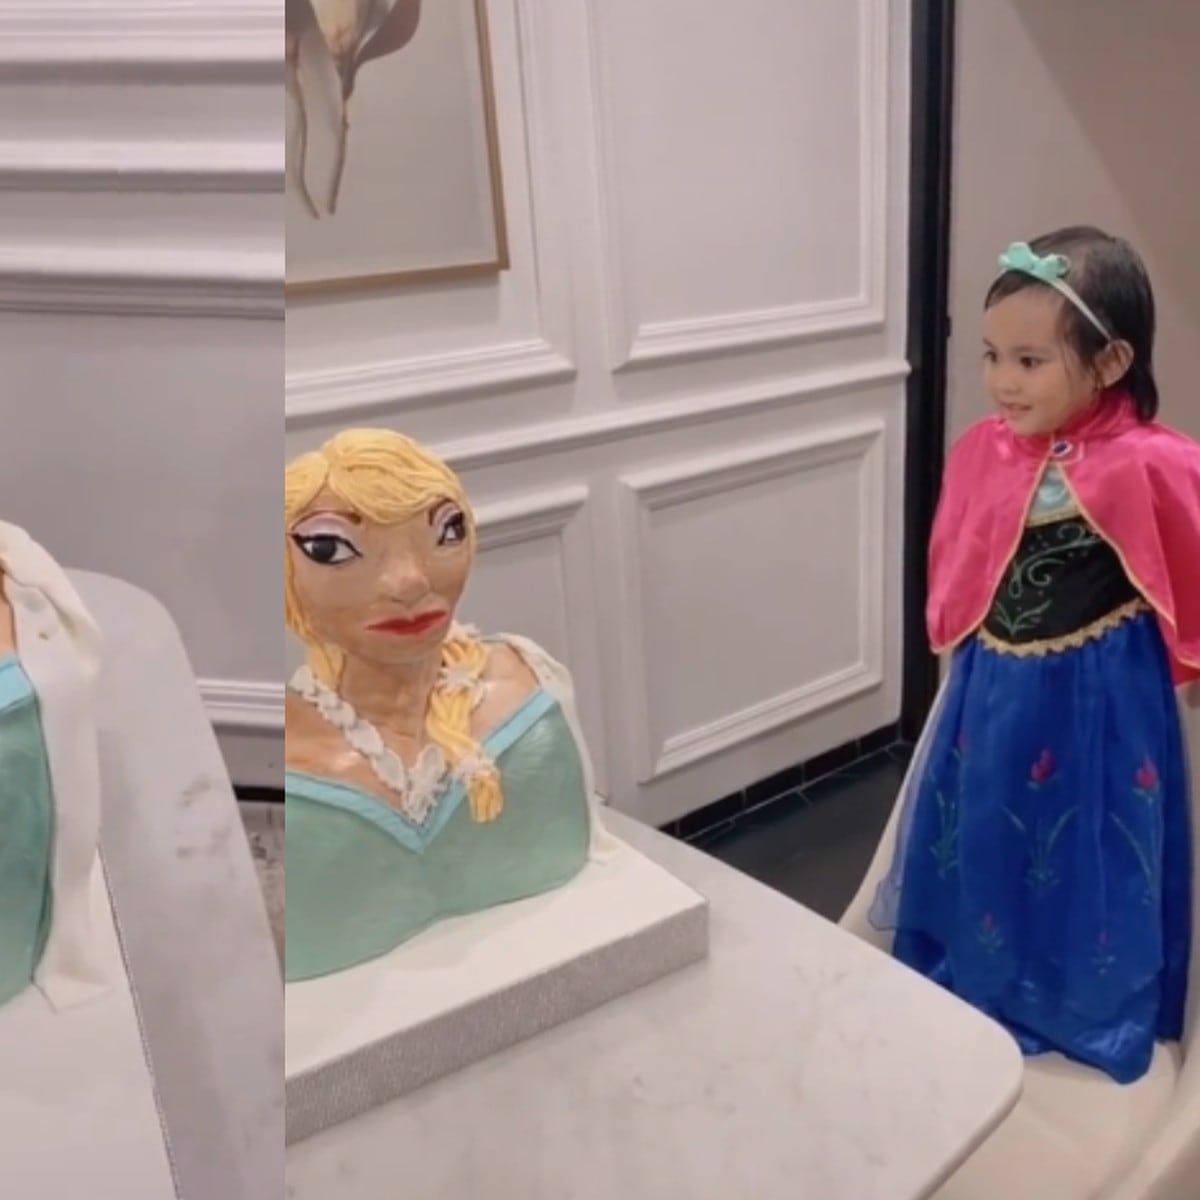 Niña recibe un pastel bien gacho de 'Frozen' y su reacción se hace viral